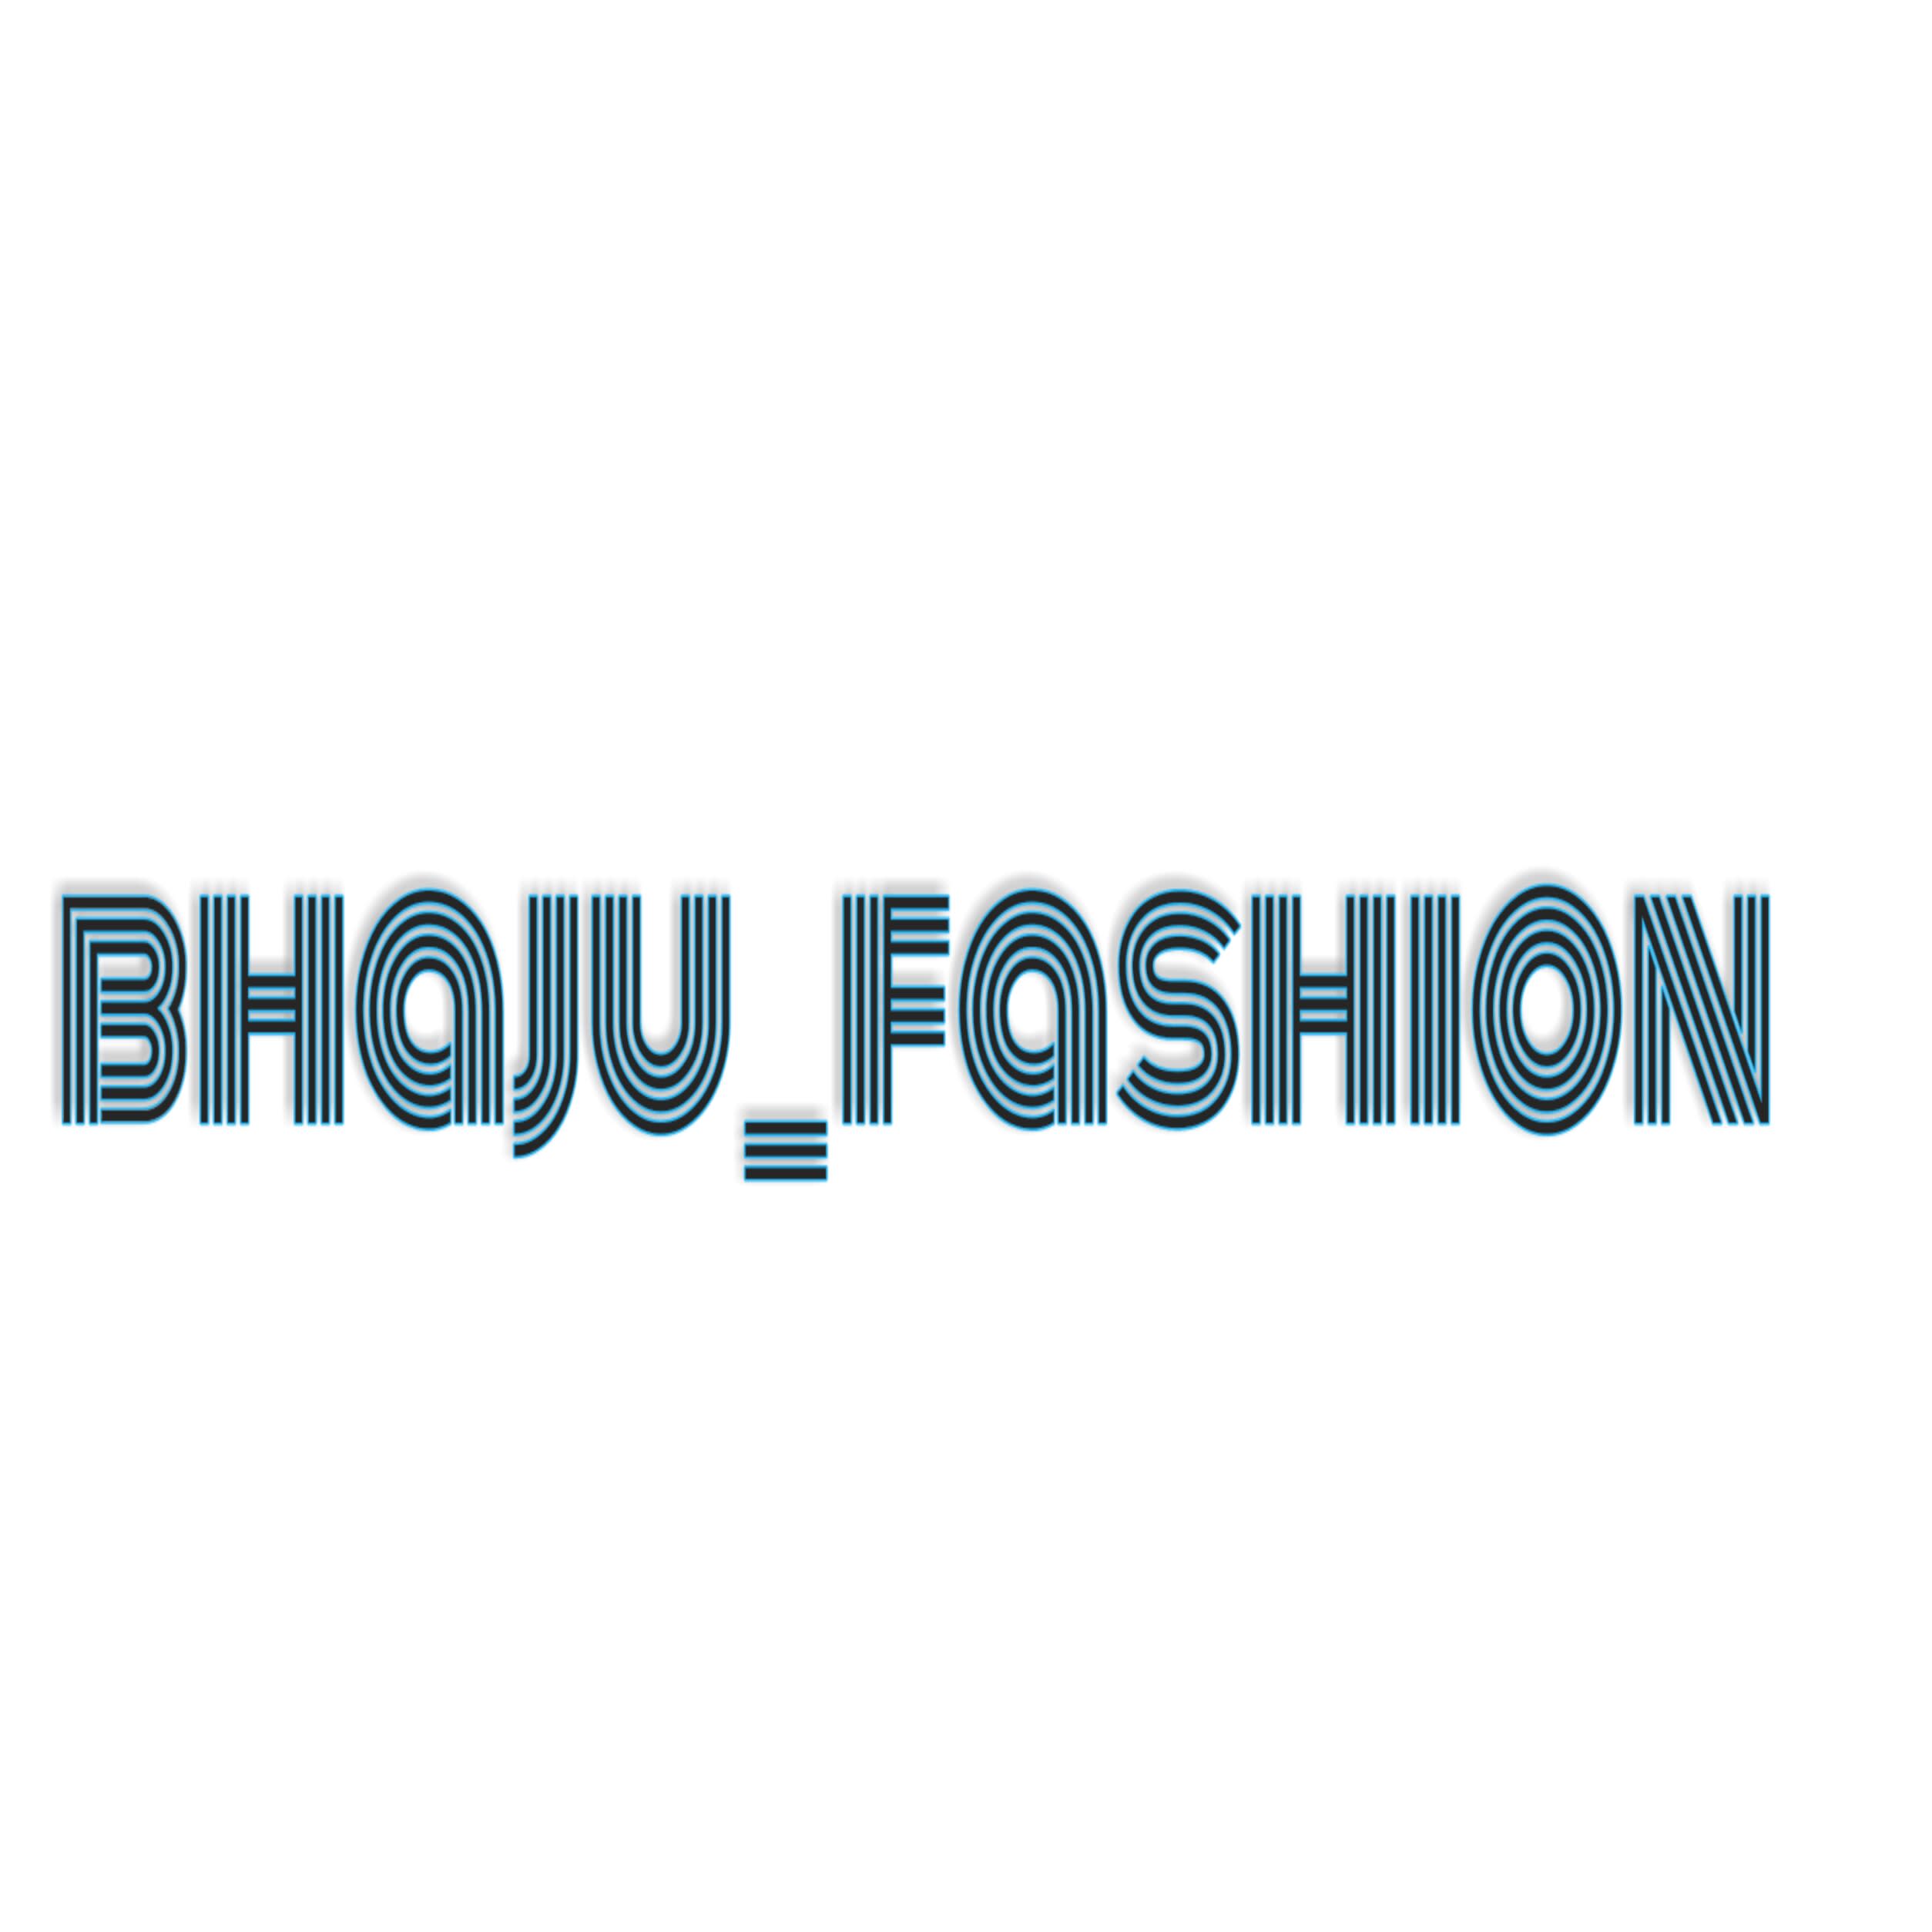 Bhaju fashion hub